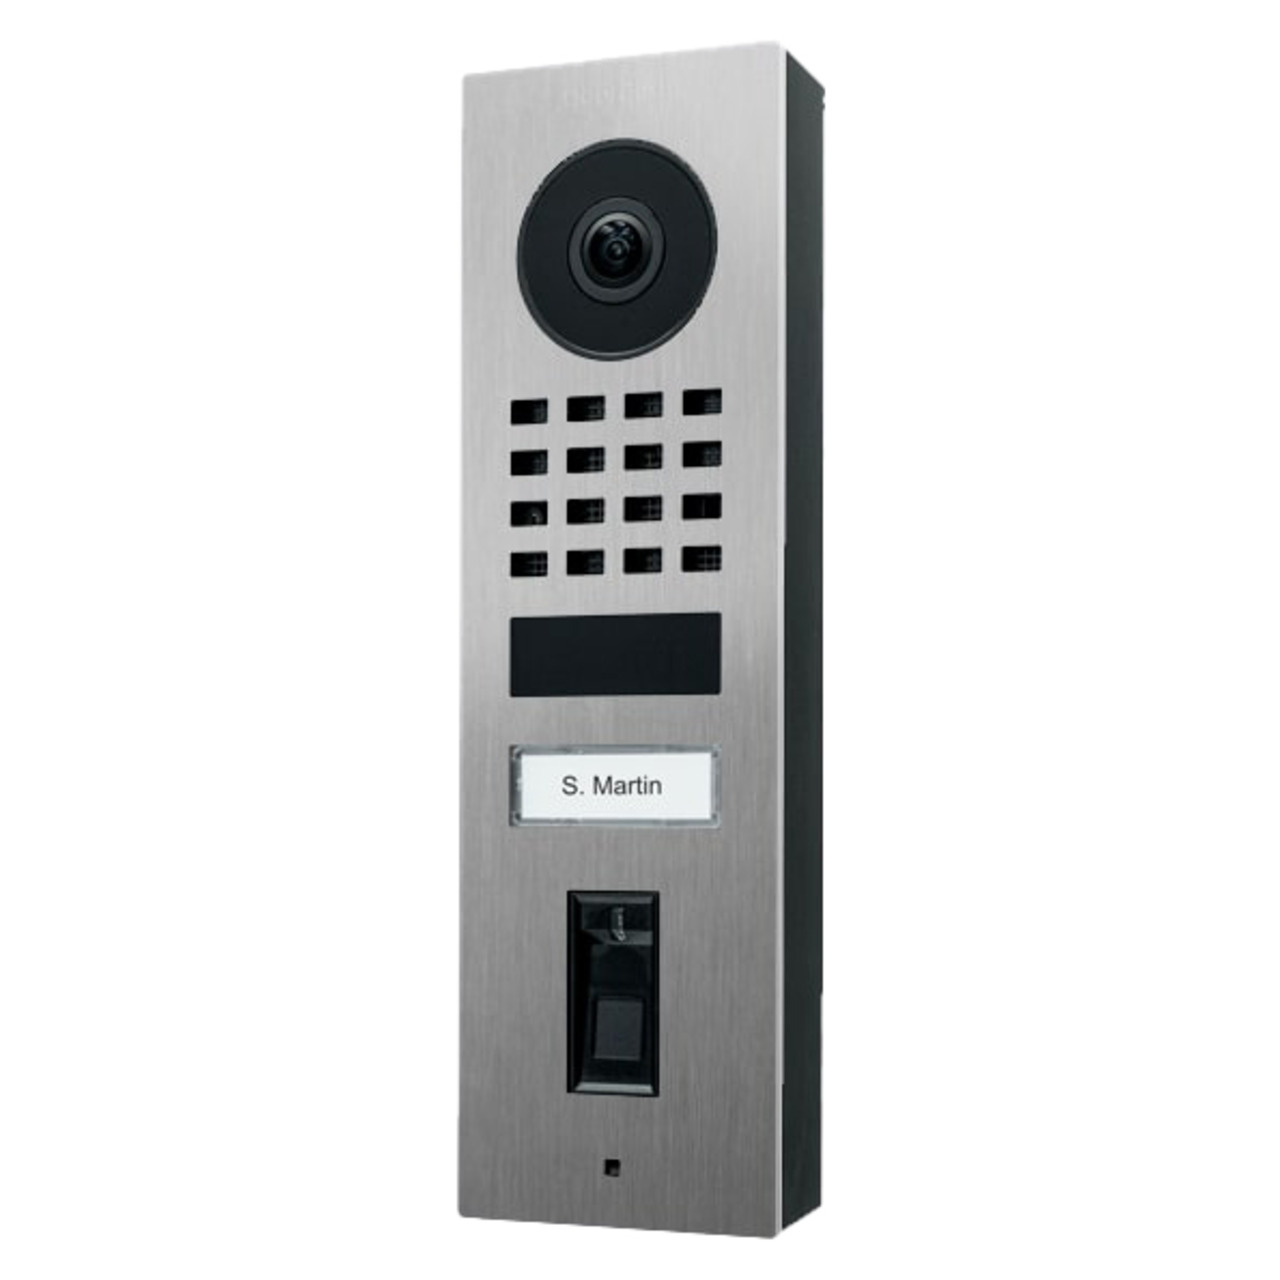 DoorBird WLAN-IP-Video-Fingerprint-Trstation D1101FV Edelstahl V4A- Unterputz